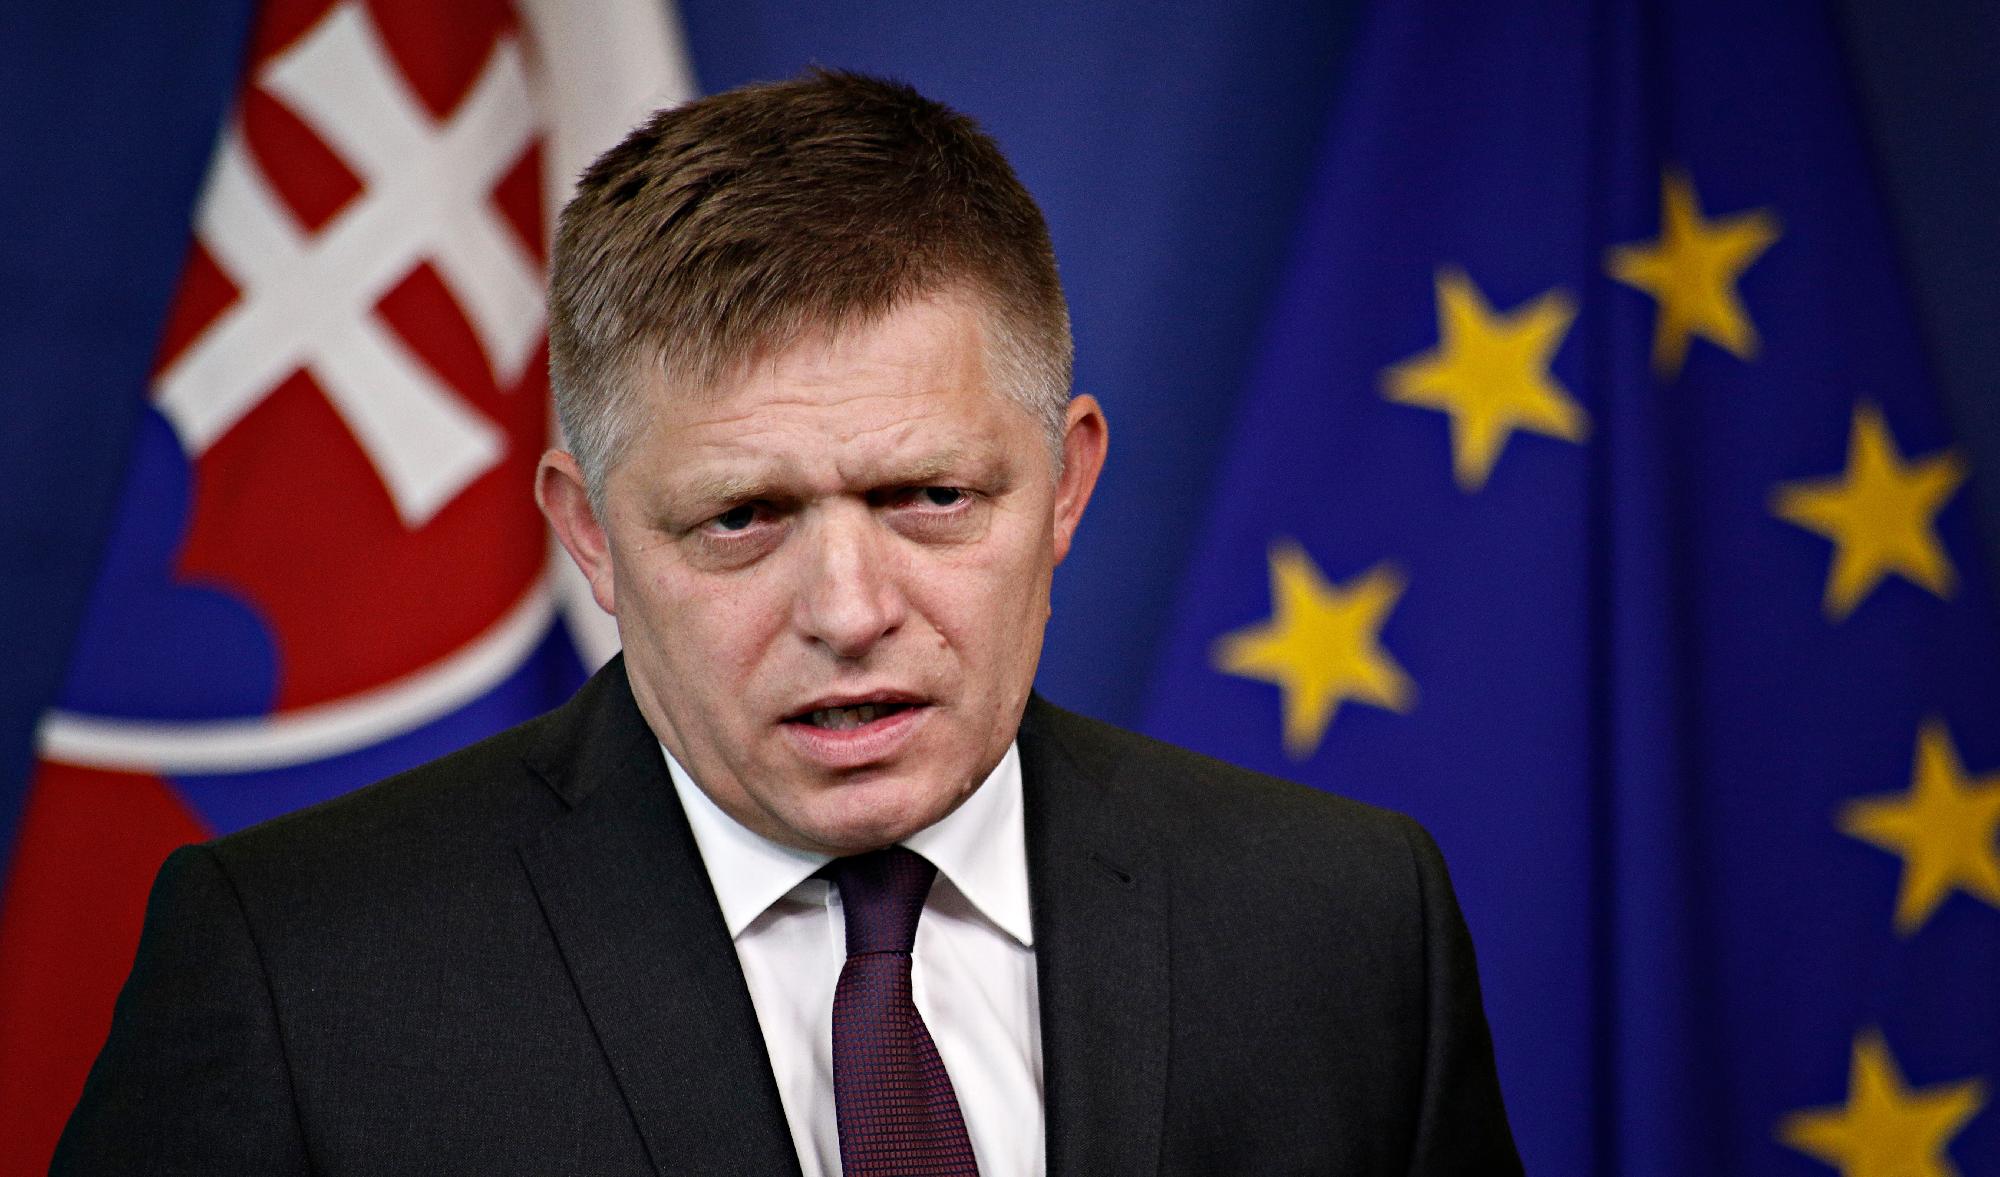 Robert Fico: Kissé nevetnem kell, ha valaki azt állítja, hogy Magyarországon sérül a jogállamiság